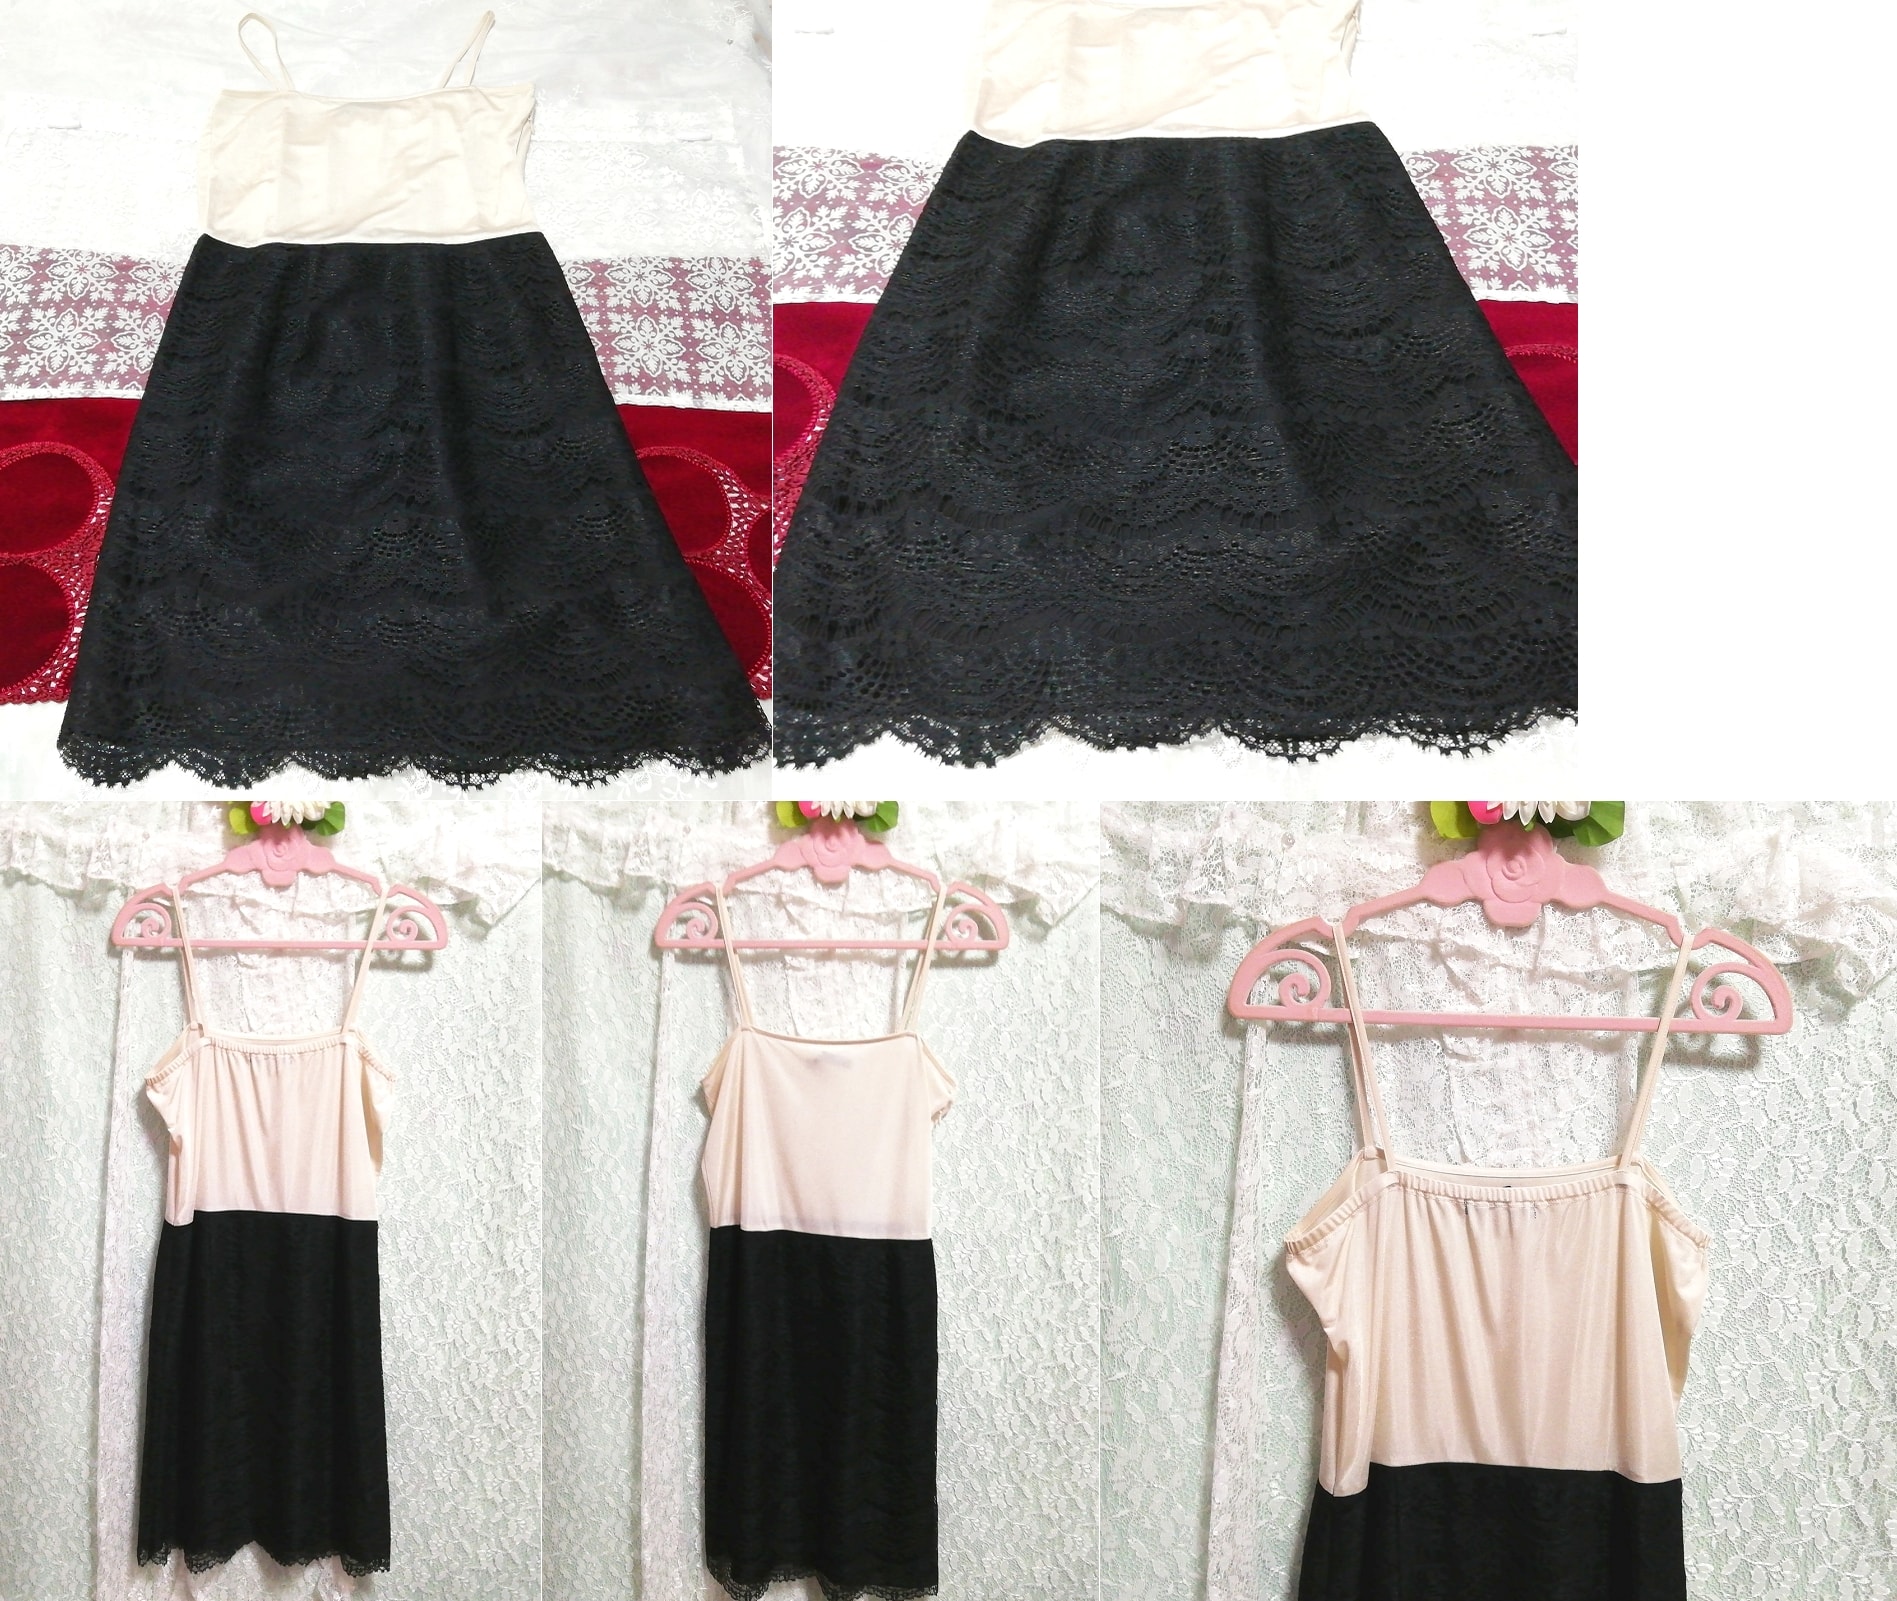 Camisola blanca floral falda de encaje negro camisón camisón babydoll, moda, moda para damas, camisola